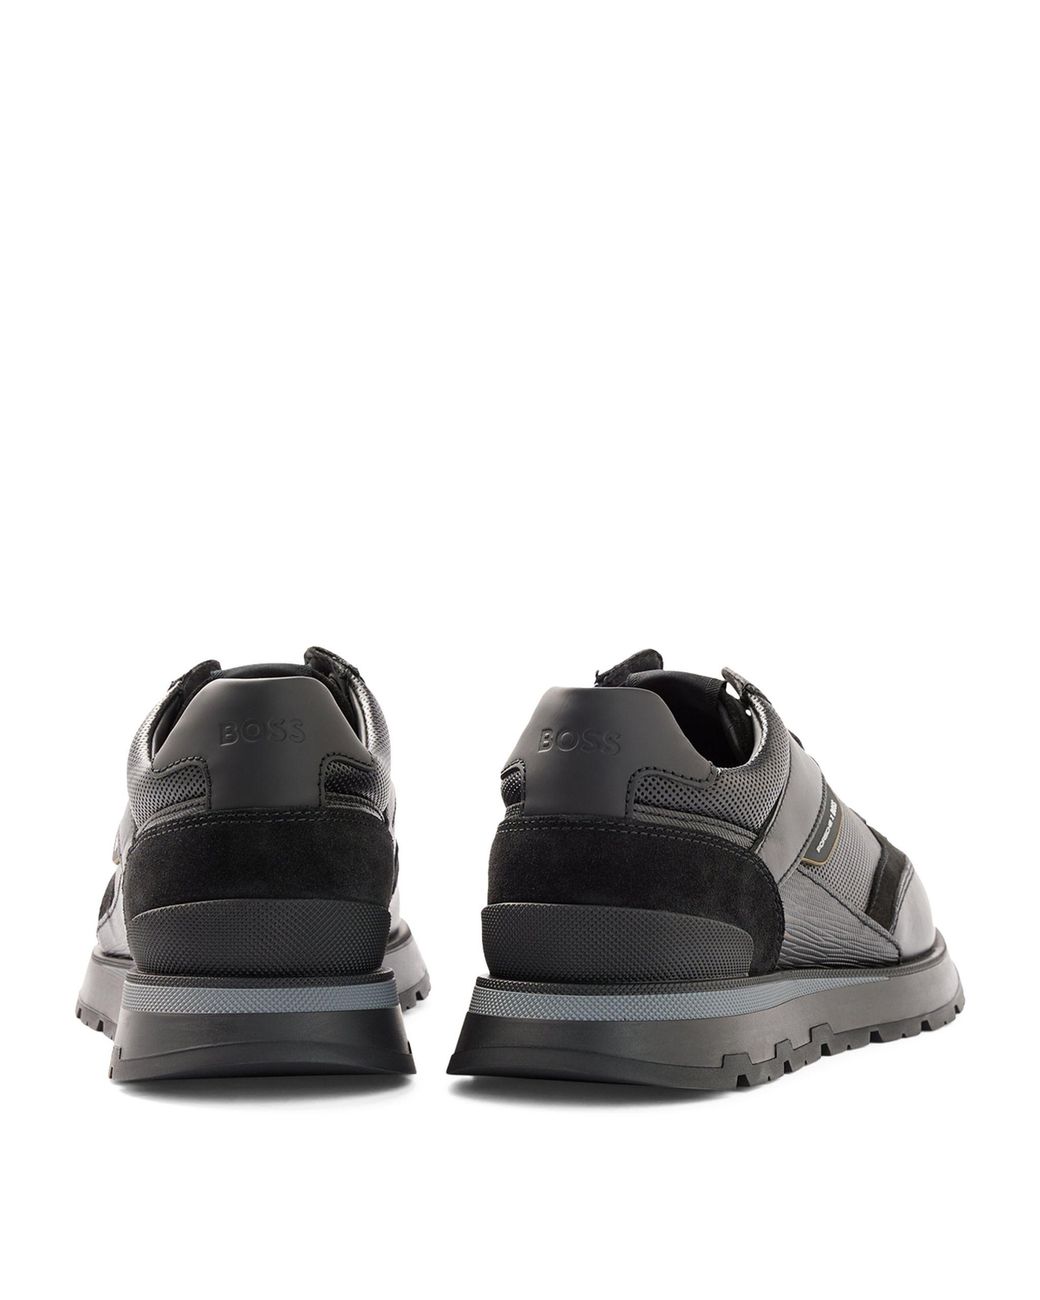 Hugo Boss Black Logo Velcro Sneaker - Tassel Children Shoes